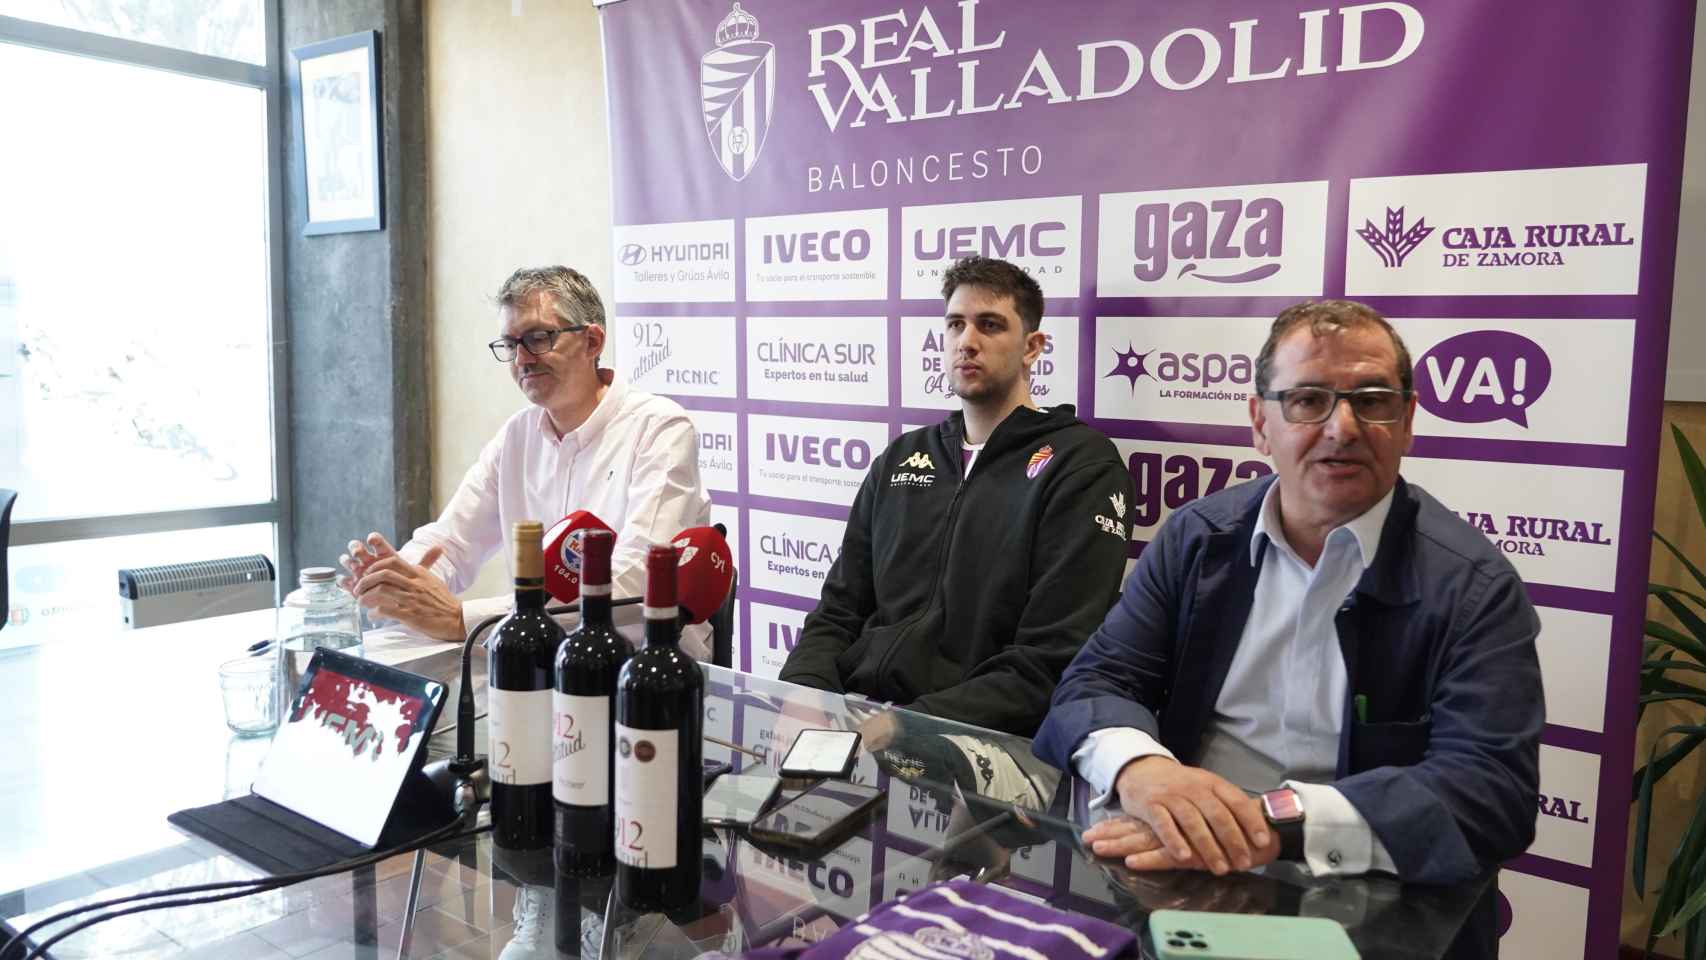 Renovación del convenio entre Caja Rural de Zamora y el UEMC Real Valladolid Baloncesto, con la presencia del nuevo jugador Jaime Fernández